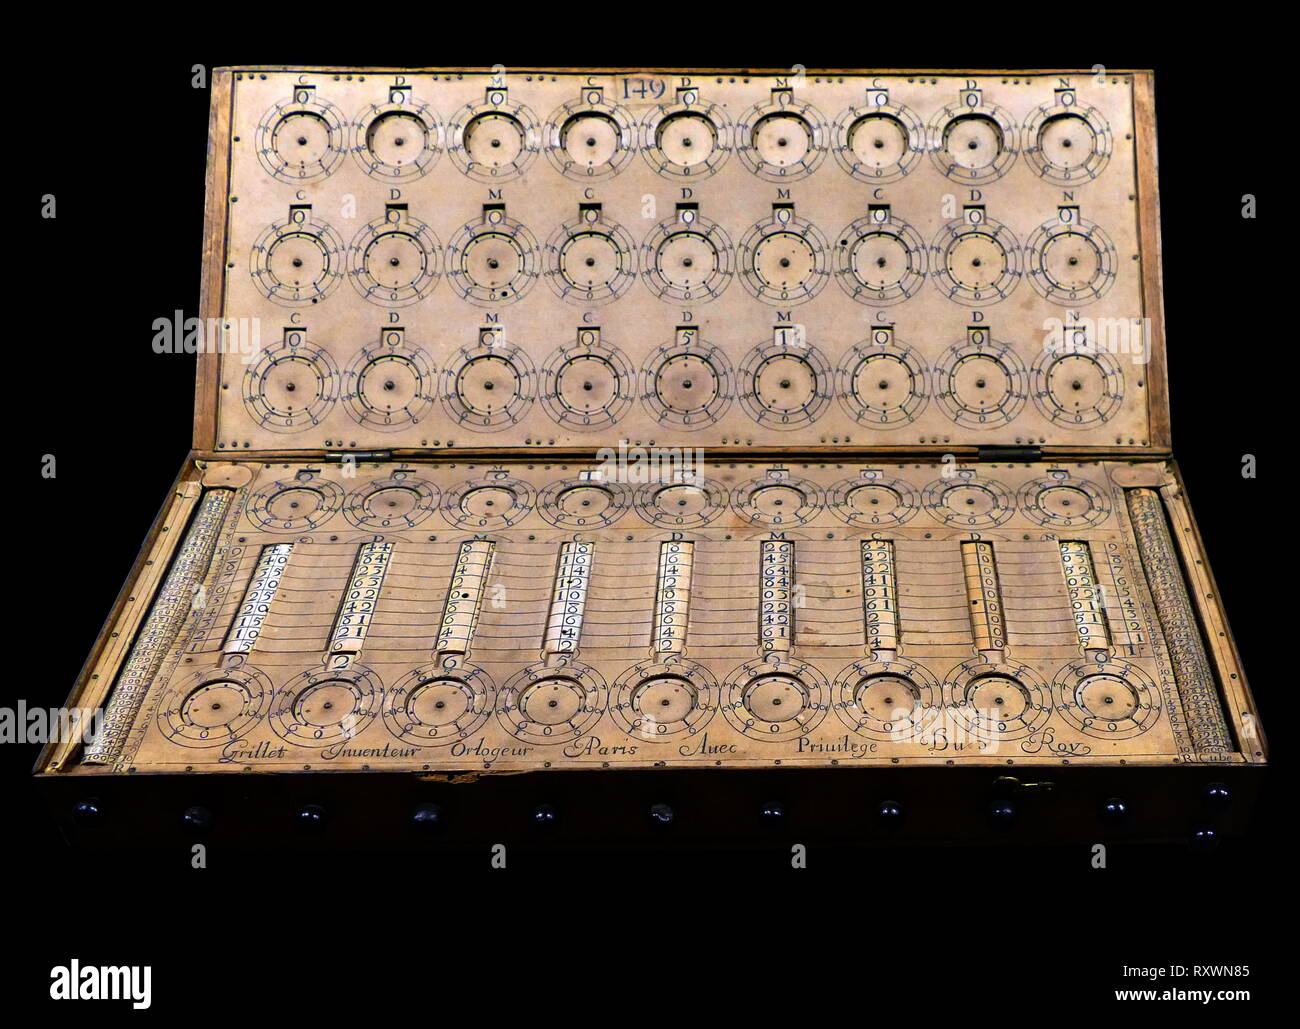 René Grillet de Roven, fue un mecánico francés y relojero quien diseñó esta  máquina de calcular mecánica en el siglo XVII. Grillet vinieron de Rouen en  el noroeste de Francia, la capital